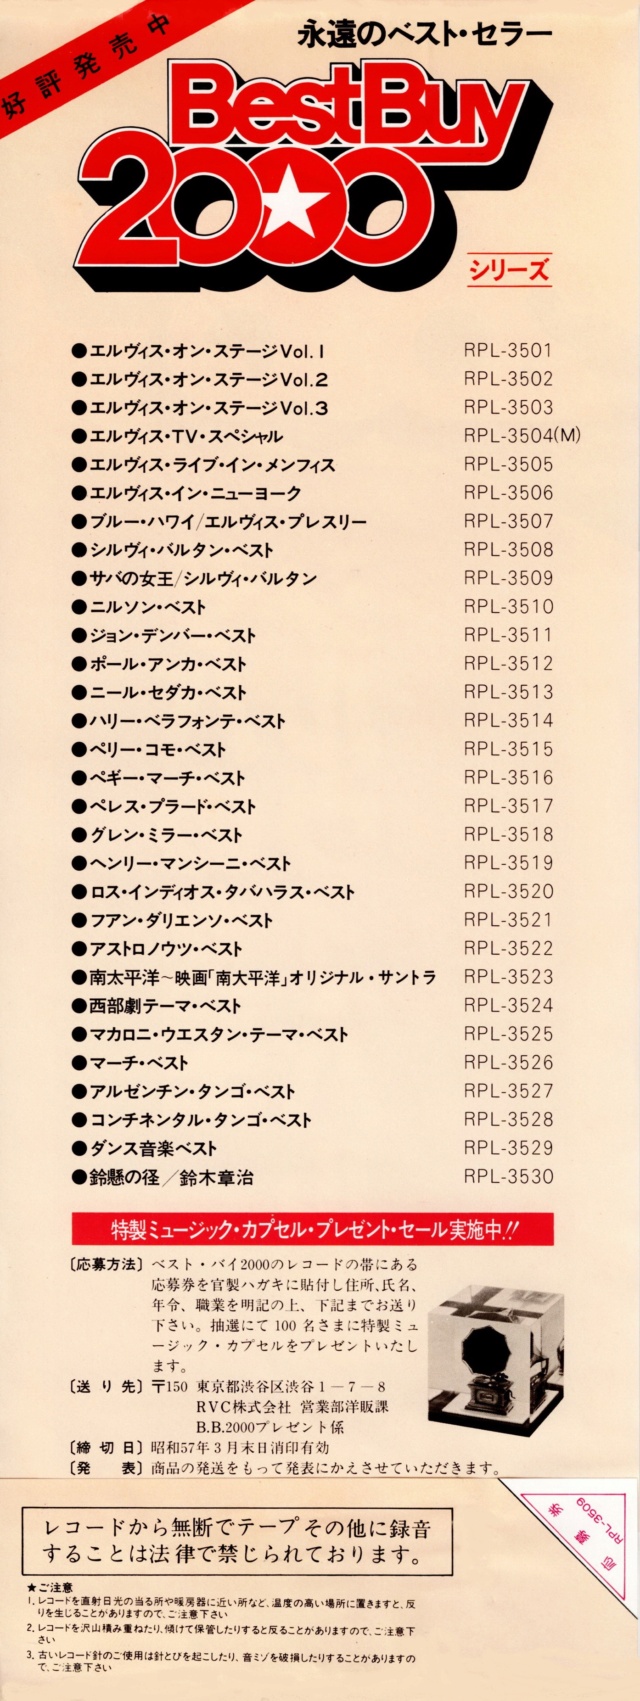 Discographie Japonaise - 4ème partie (33 T COMPILATION) - Page 15 Jpn_rp58